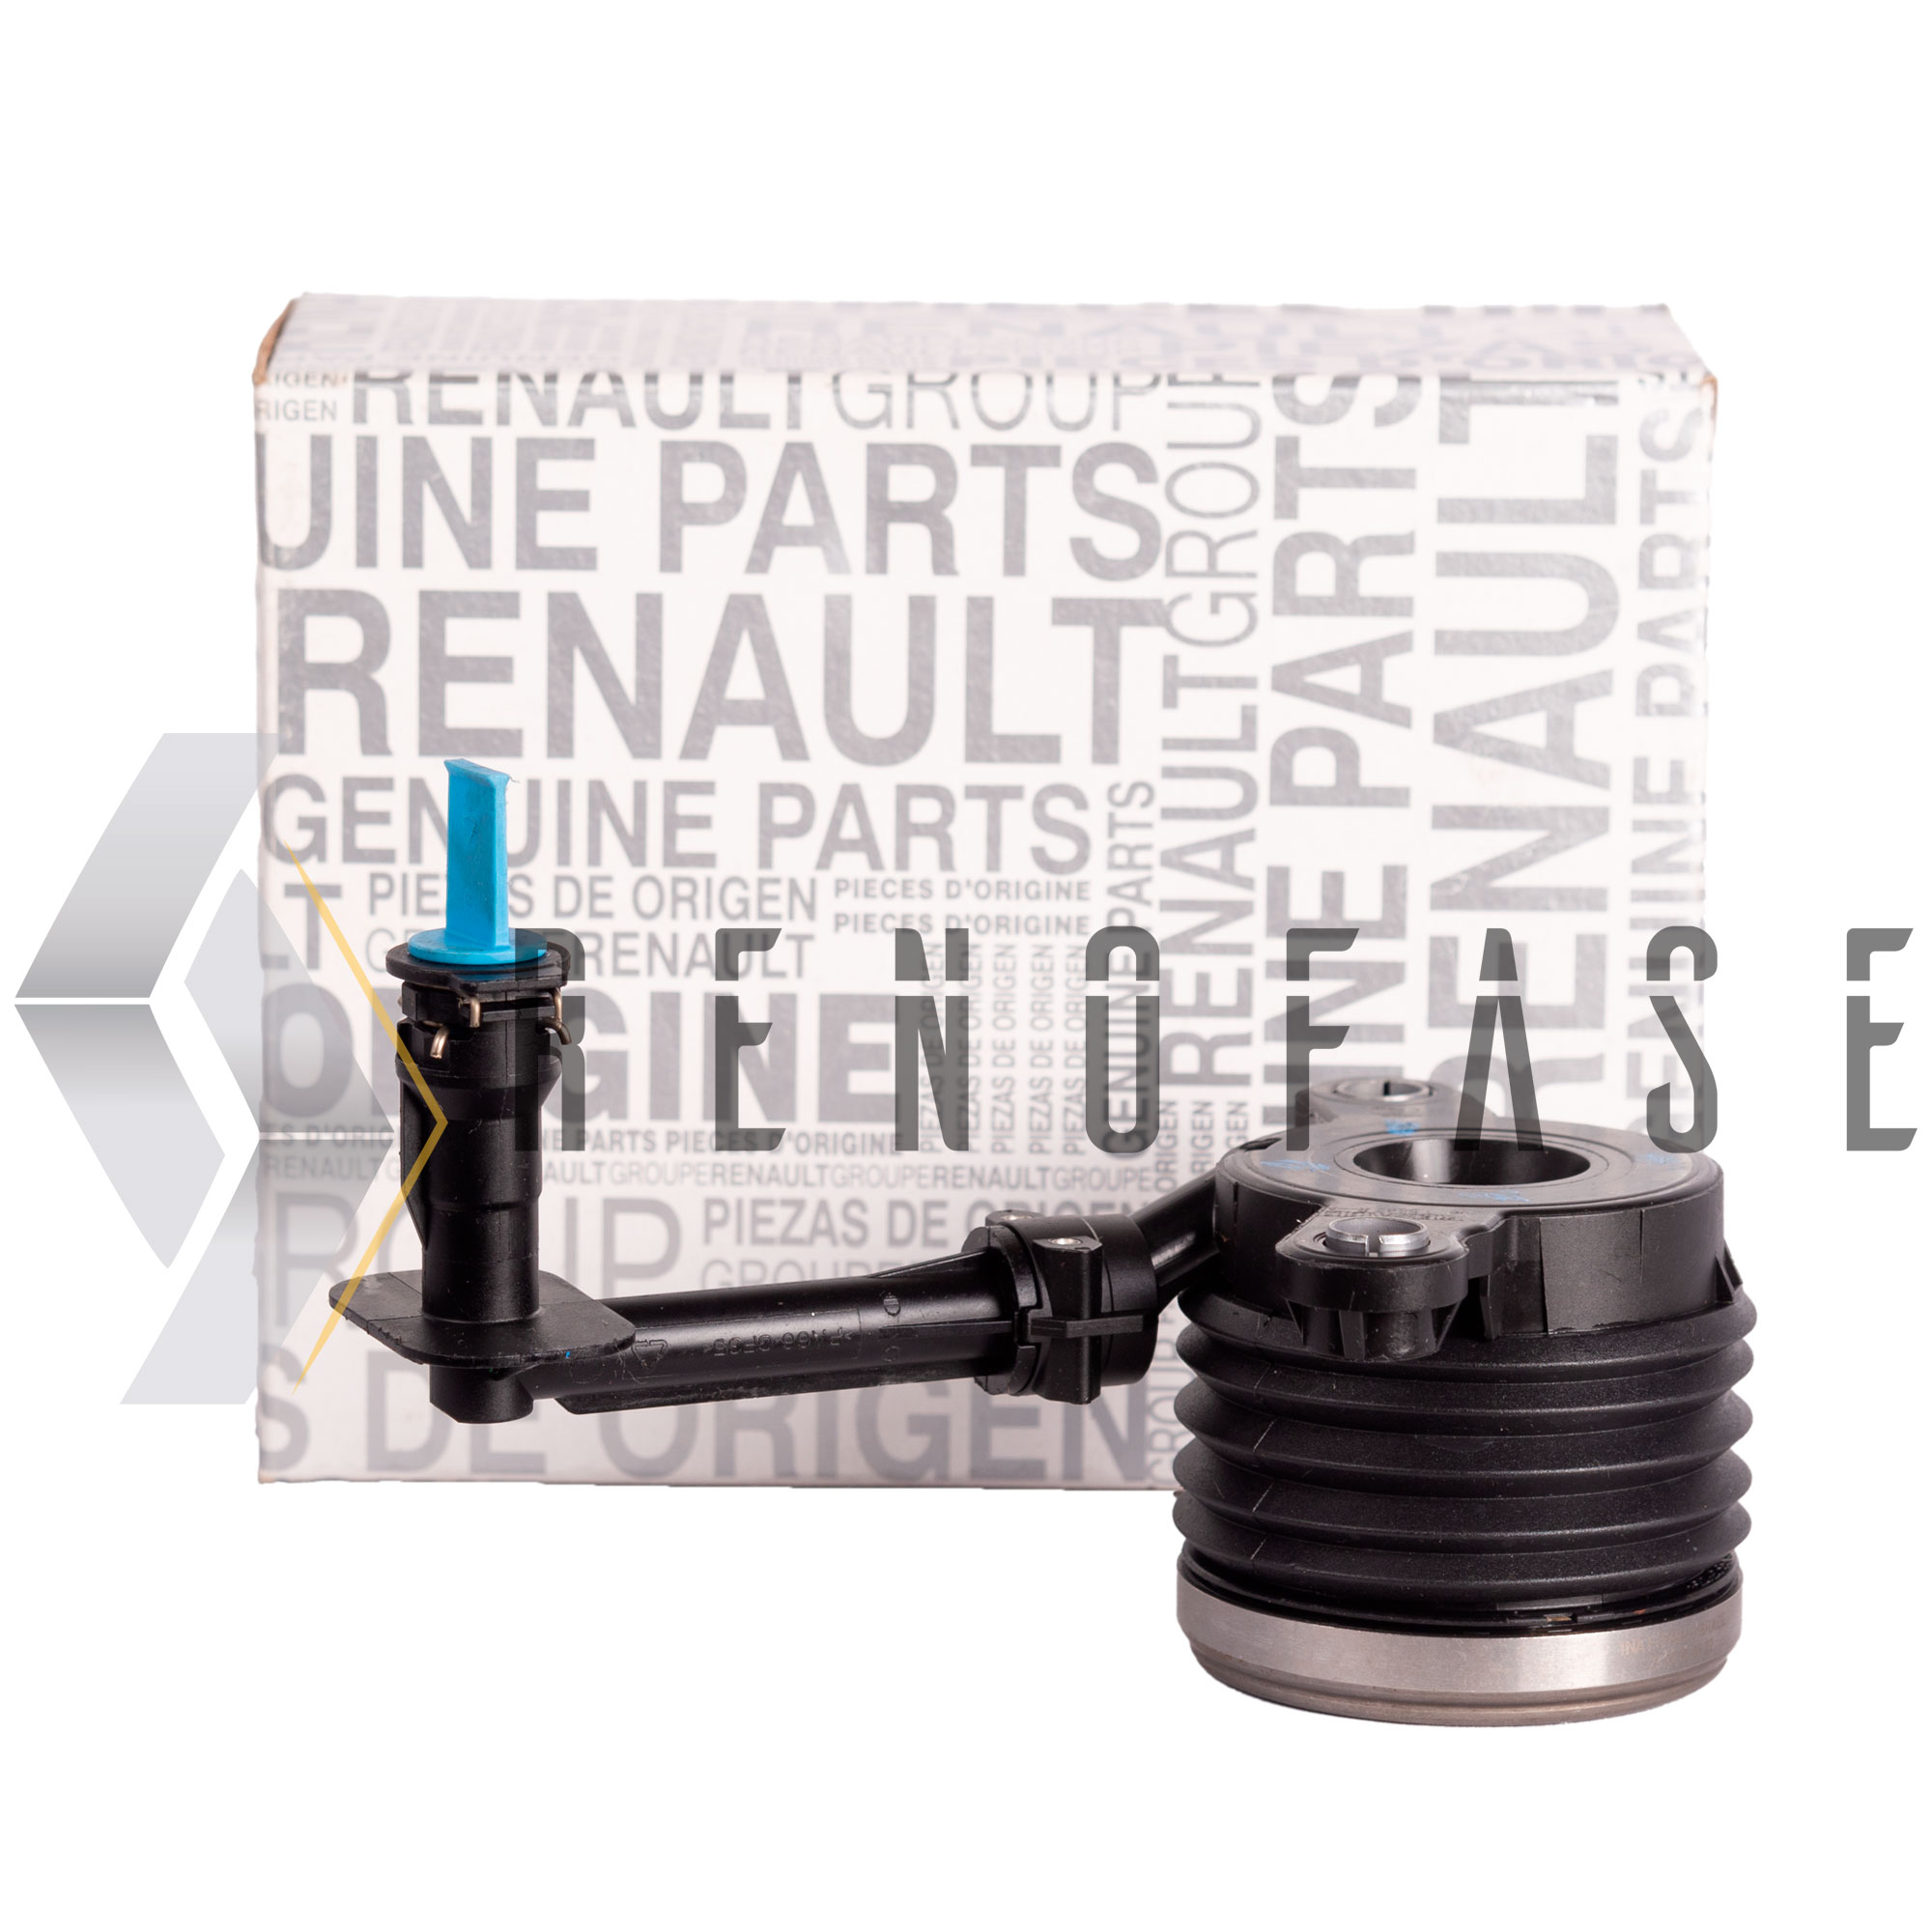 Pastillas de Freno Renault Duster 4X4 Motor 2.0